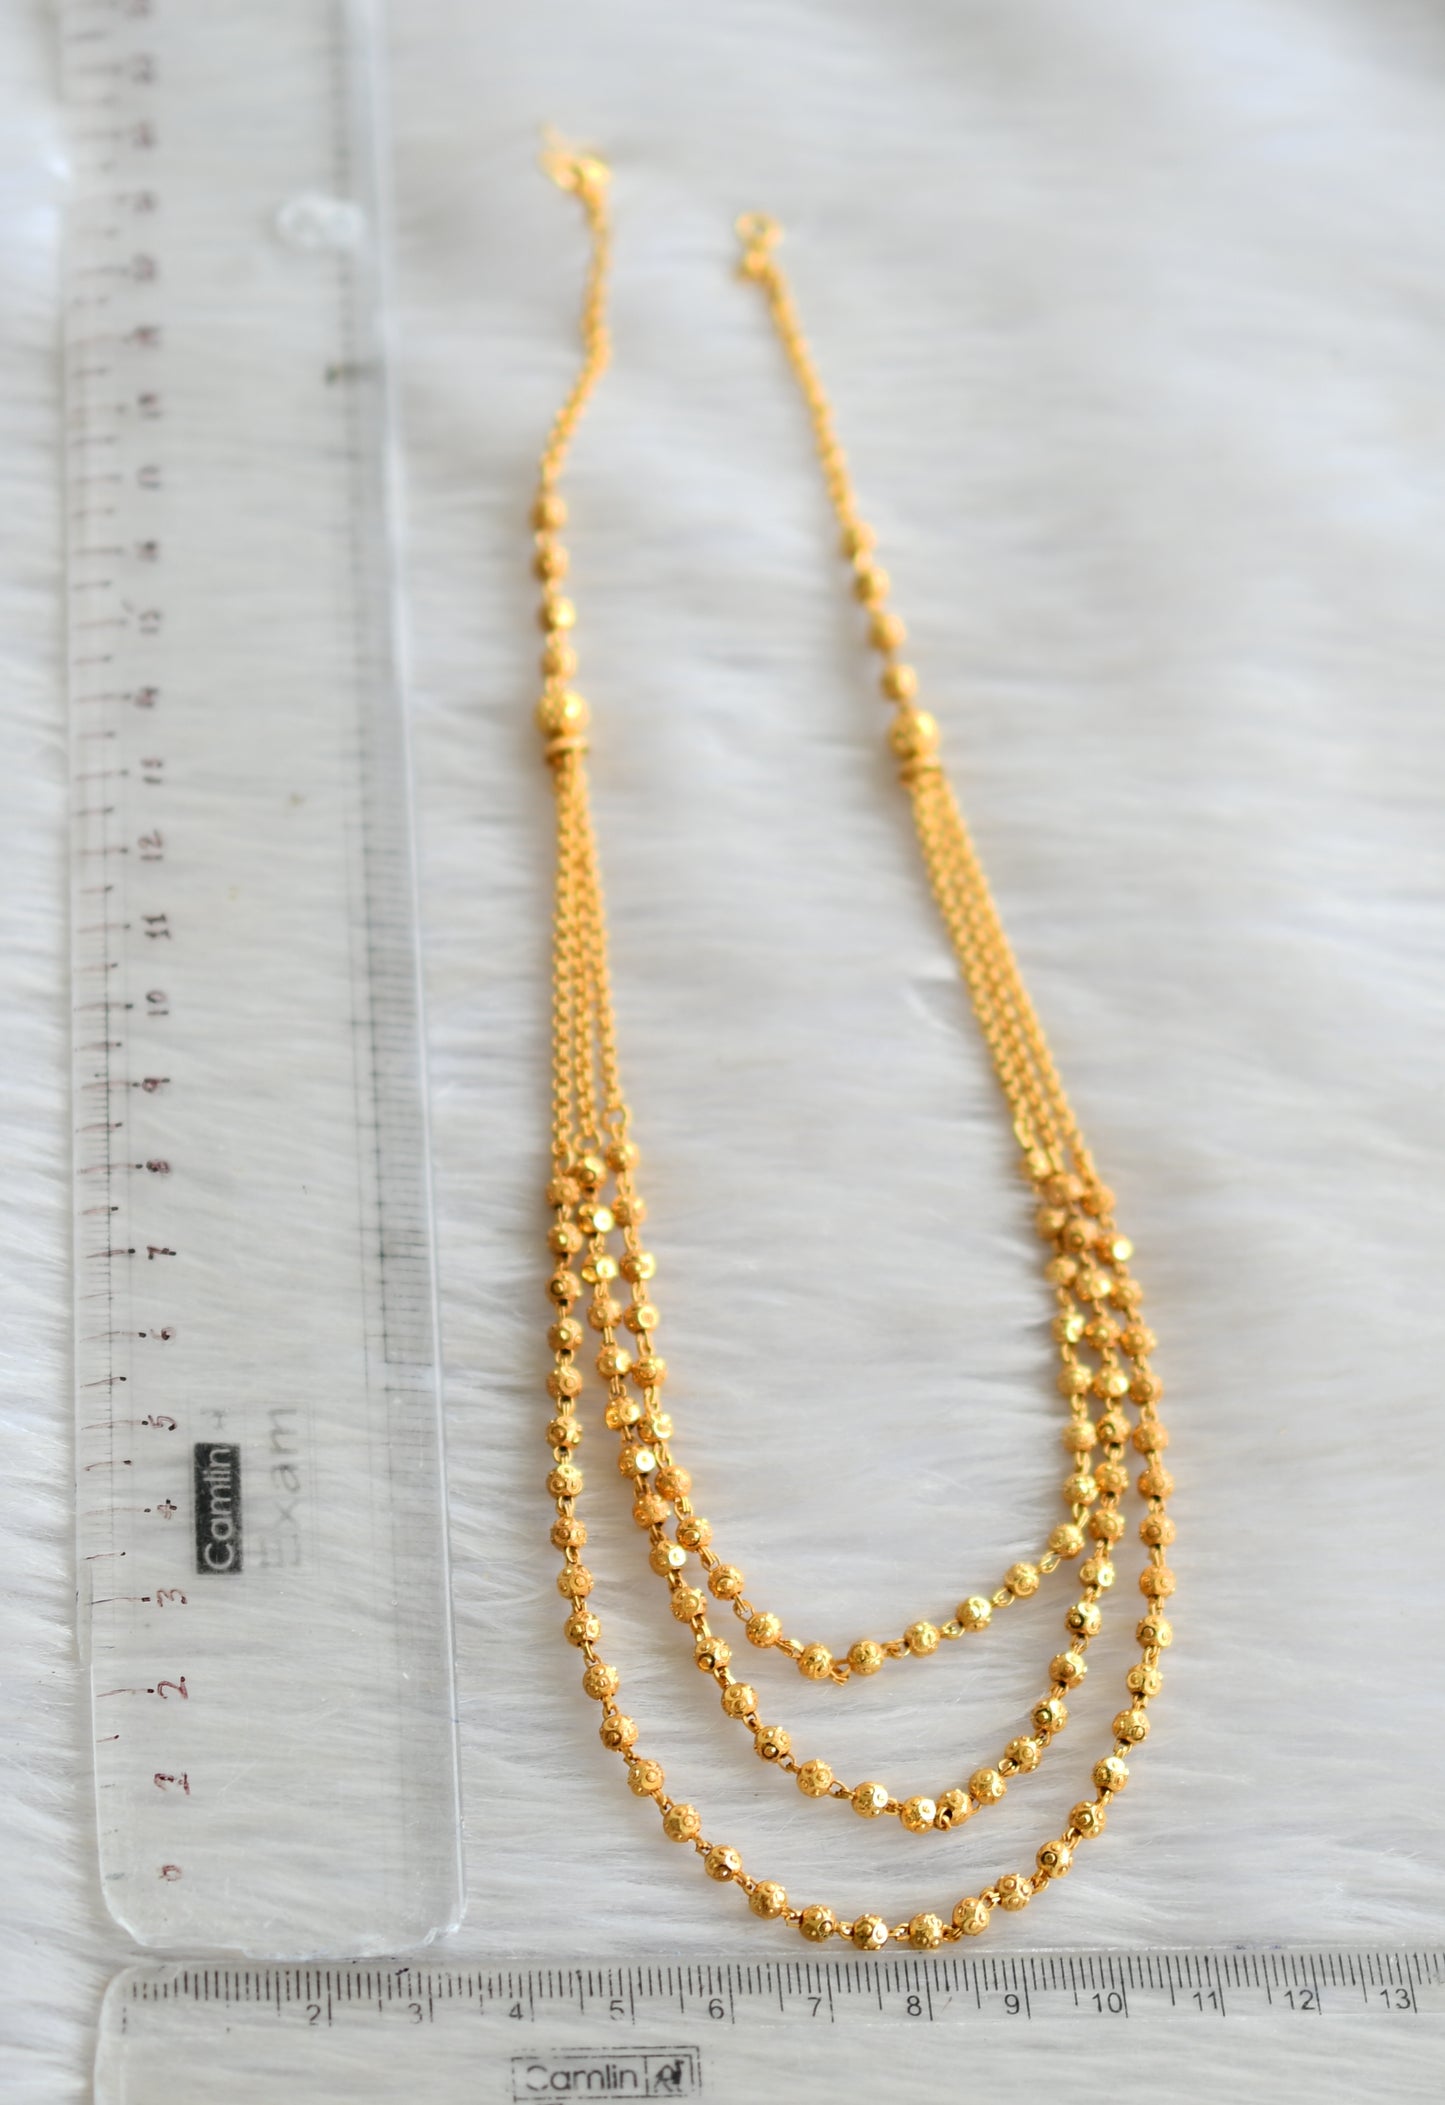 Gold tone multilayer designer ball necklace dj-42888